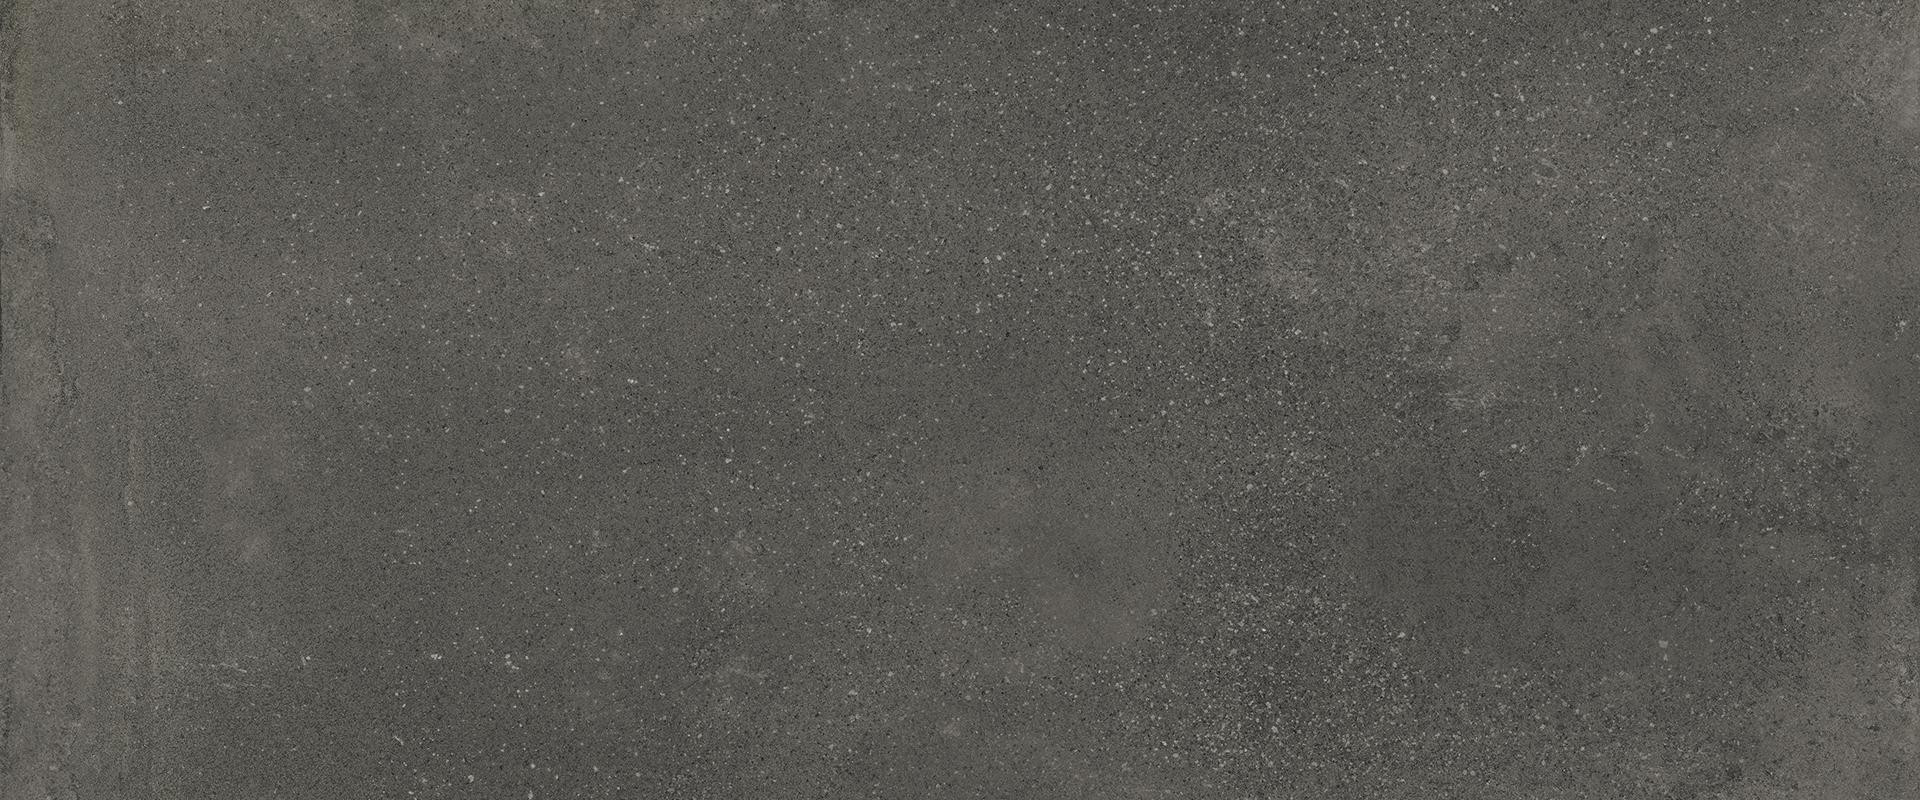 Pavimento in gres porcellanato Black R11 serie Be Square by Emilceramica